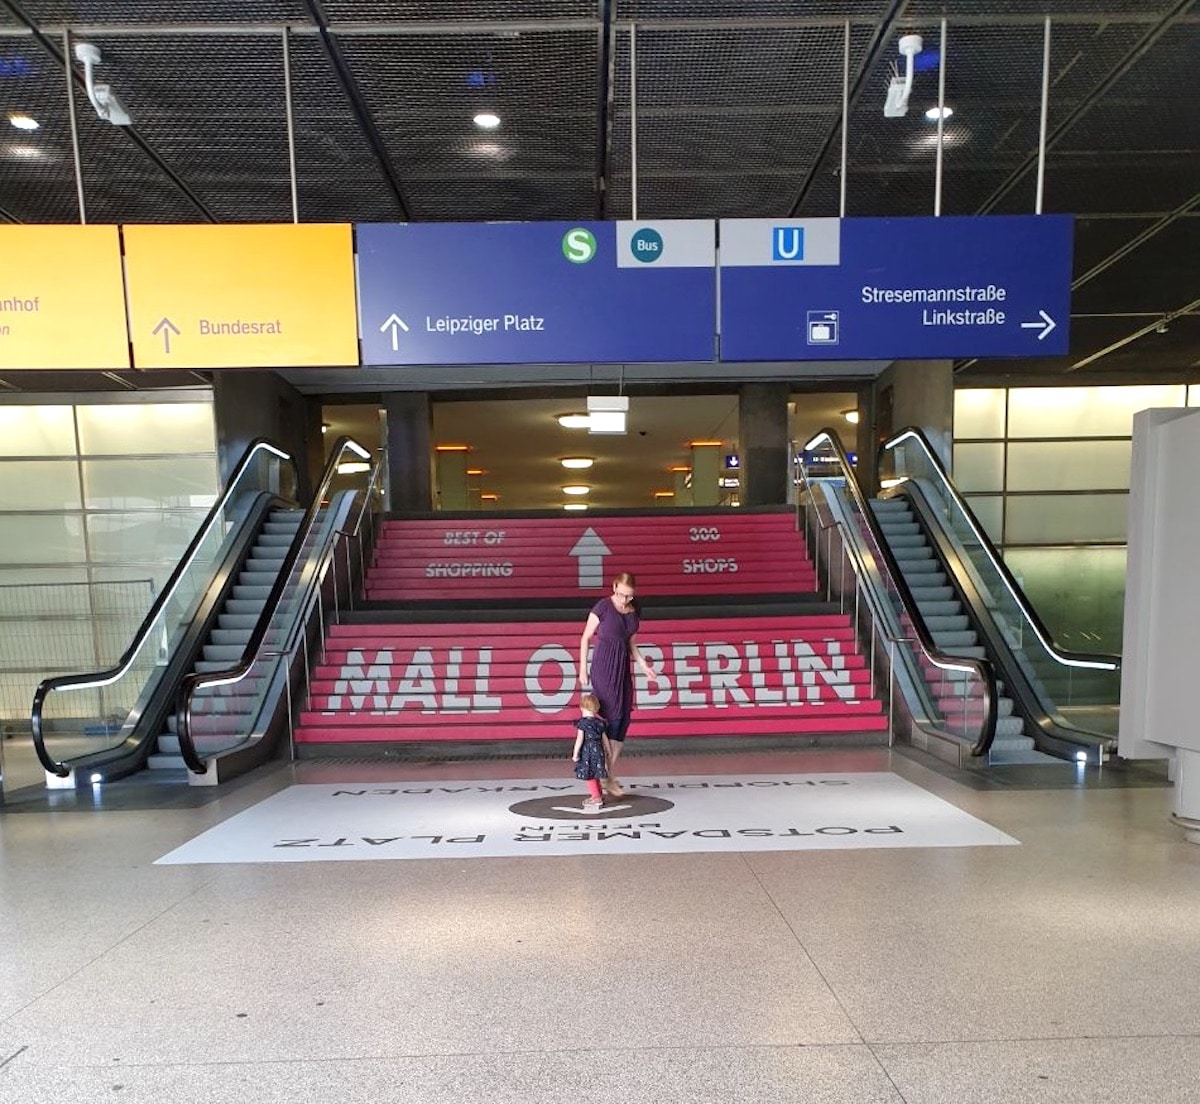 Mall of Berlin und Potsdamer Platz Arkaden mit S-Bahn-Anbindung. - Mehr Infos auf Mamaskind.de